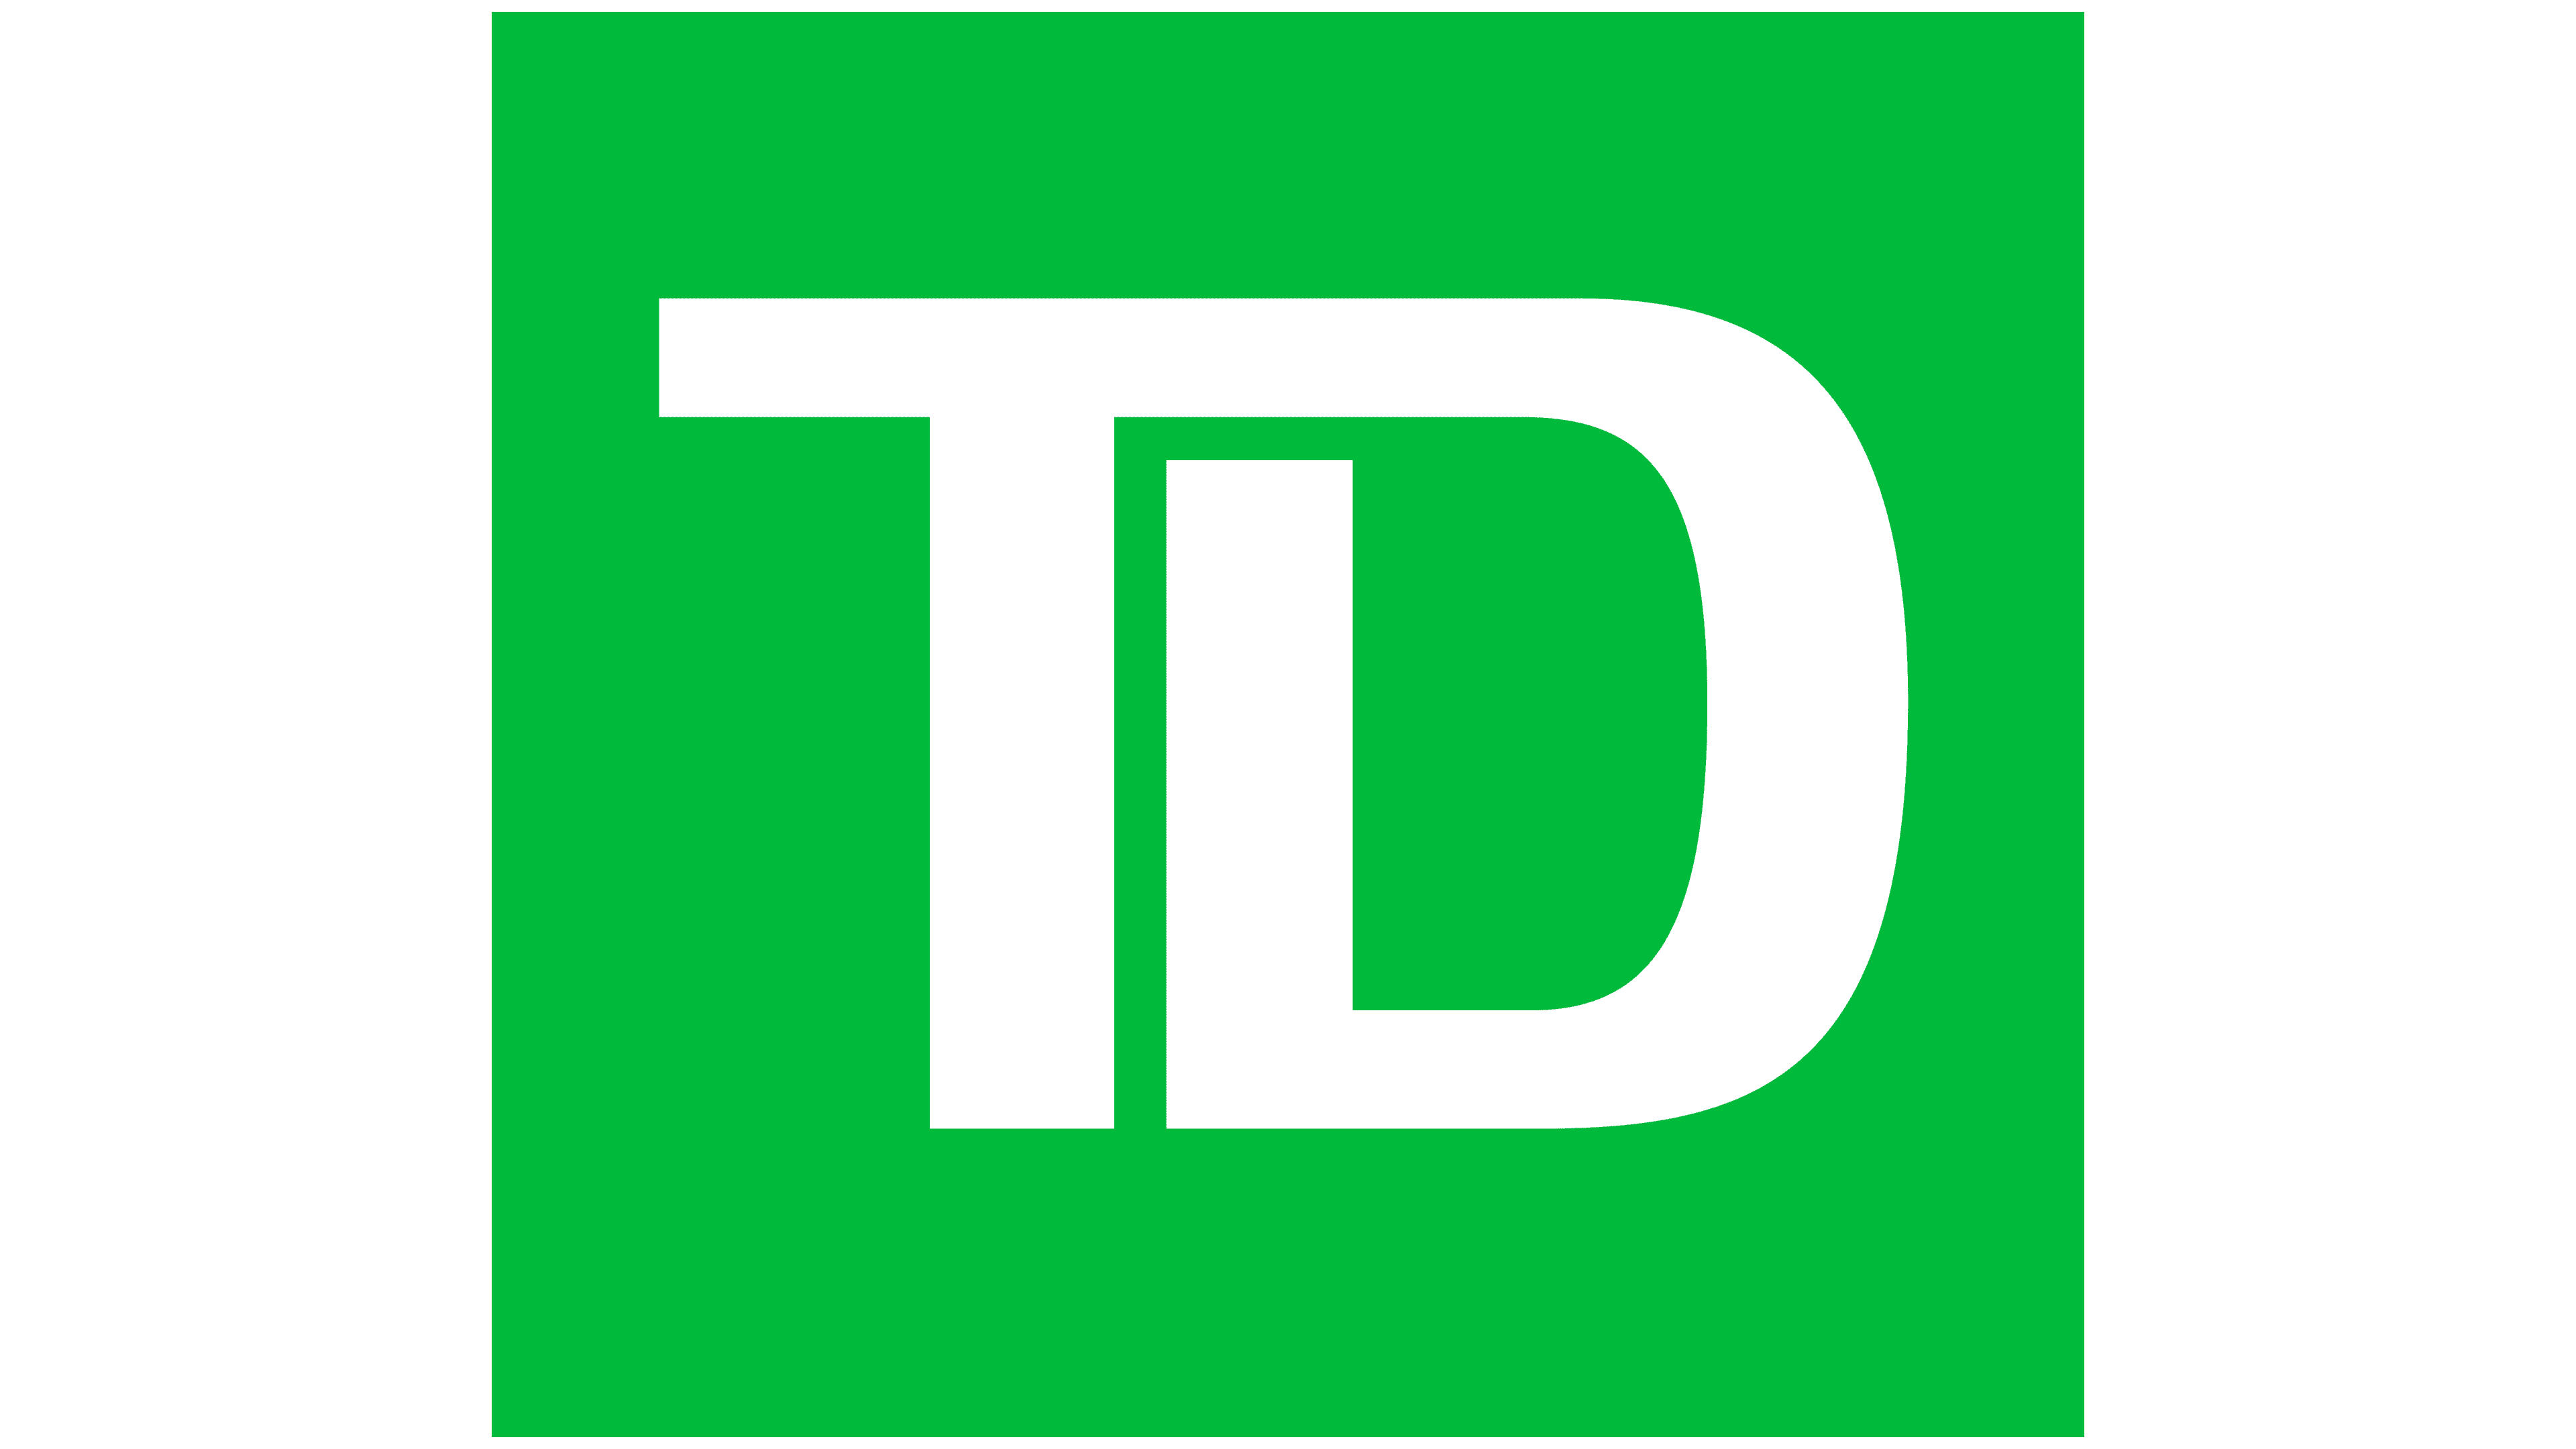 TD-Bank-logo